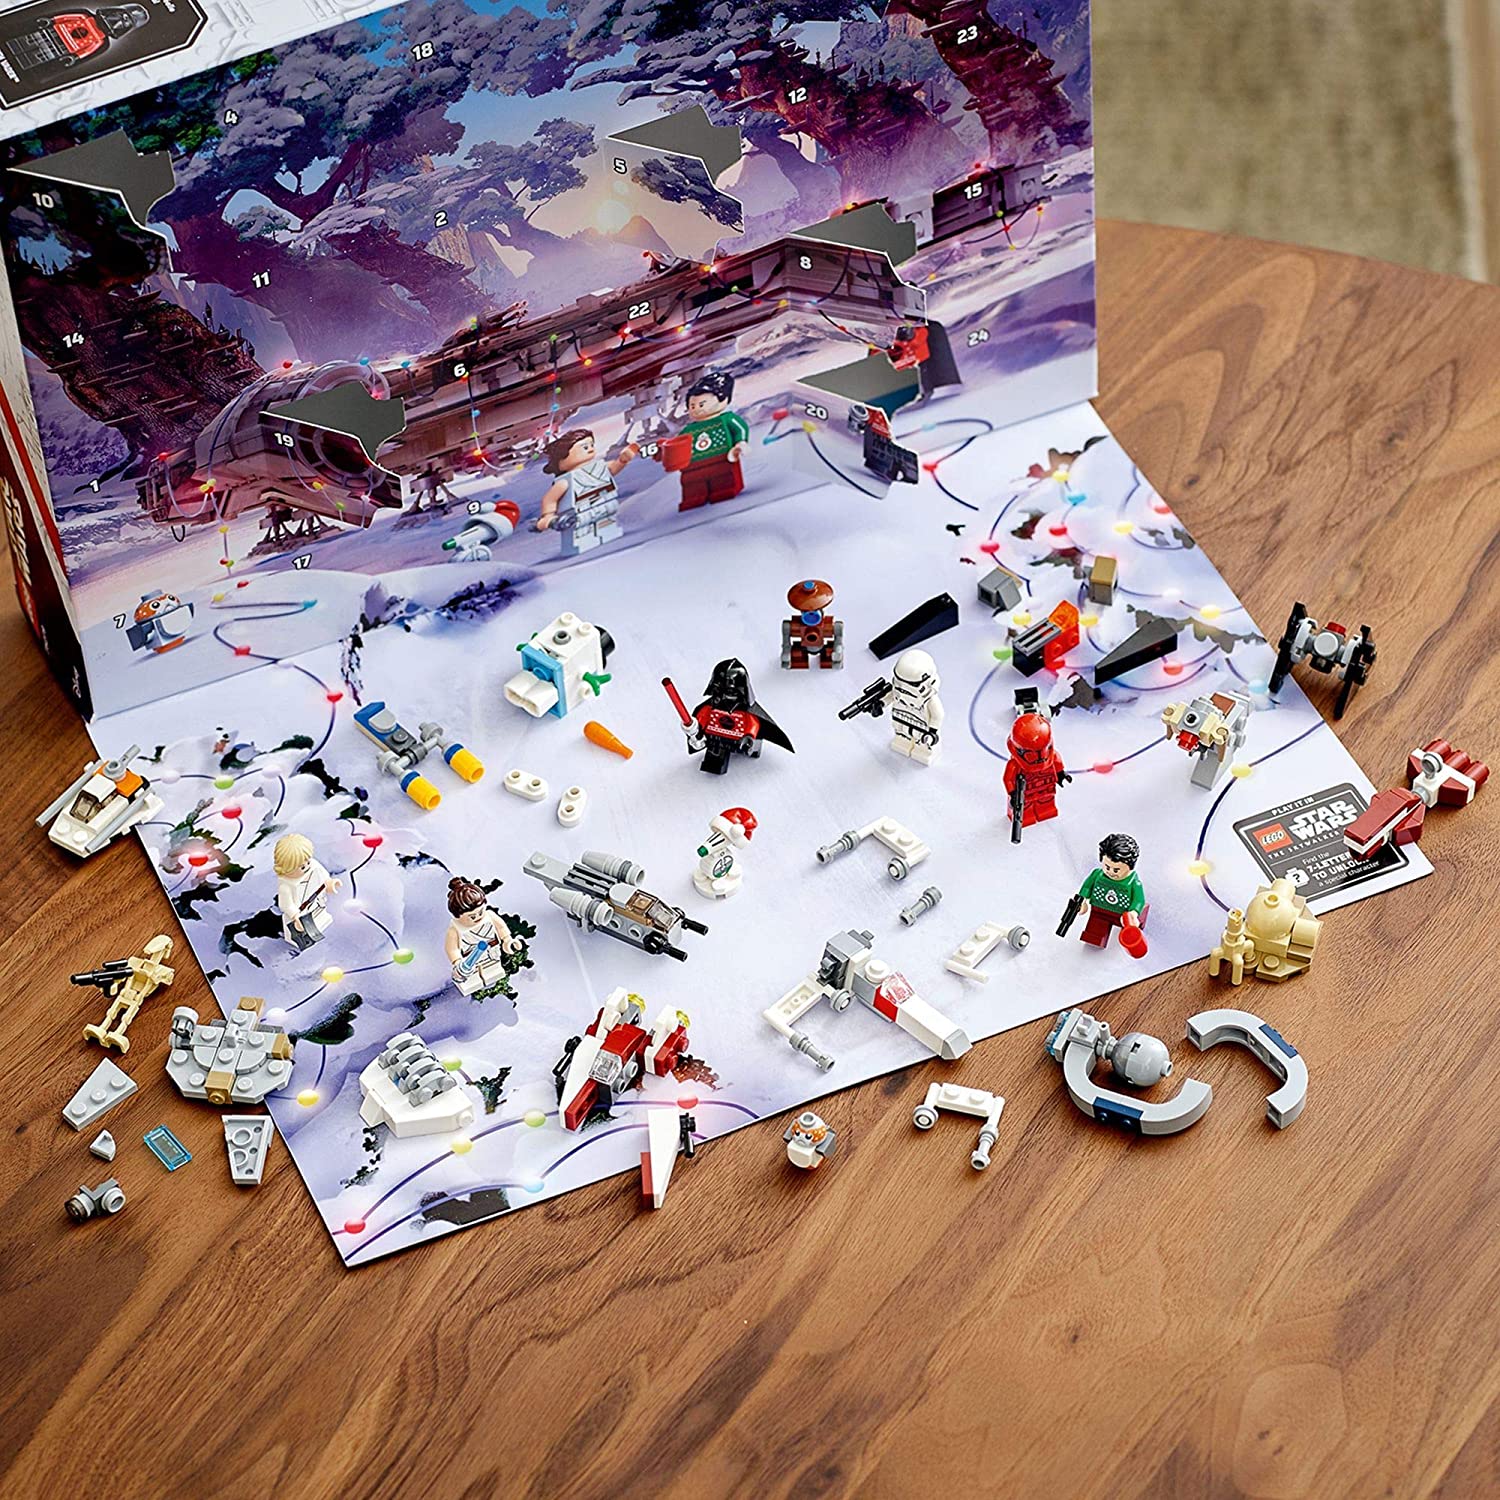 Hinter jedem Türchen des LEGO Star Wars Adventskalenders (75279) befinden sich Baumodelle von Charakteren, Fahrzeugen und Schauplätzen, die beim Bauen die Vorfreude auf Weihnachten steigern. Es gibt sogar einen Code zum Freischalten von Inhalten im Spiel, LEGO Star Wars: Die Skywalker Saga Enthält 6 LEGO Minifiguren und 6 LEGO Figuren, zum Beispiel Poe Dameron und Darth Vader mit Weihnachtspullovern und ein Tauntaun mit roter Nase sowie eine ausklappbare Spielplatte mit dem Bild eines Millennium Falcon für Rollenspiele Darüber hinaus gibt es 12 Mini-Baumodelle wie den Millennium Falcon, einen A-Wing, einen TIE Fighter, einen X-Wing, ein Droiden-Kontrollschiff, Anakins Podracer und Darth Vaders Festung, um die Fantasie der Kinder in der Vorweihnachtszeit zu wecken Dieses 311-teilige Adventskalender-Bauset ist ein tolles Geschenk in der Vorweihnachtszeit für Kinder ab 7 Jahren. Die Figuren und Baumodelle können auch mit anderen LEGO Star Wars Sets kombiniert werden, um noch mehr kreativen Spielspaß zu bieten Wenn nicht gerade feierlich ein Türchen geöffnet wird oder spannende Spielabenteuer stattfinden, bereichert der LEGO Star Wars Adventskalender 2020 als spektakuläres Schaustück und attraktive Weihnachtsdeko jedes Zimmer